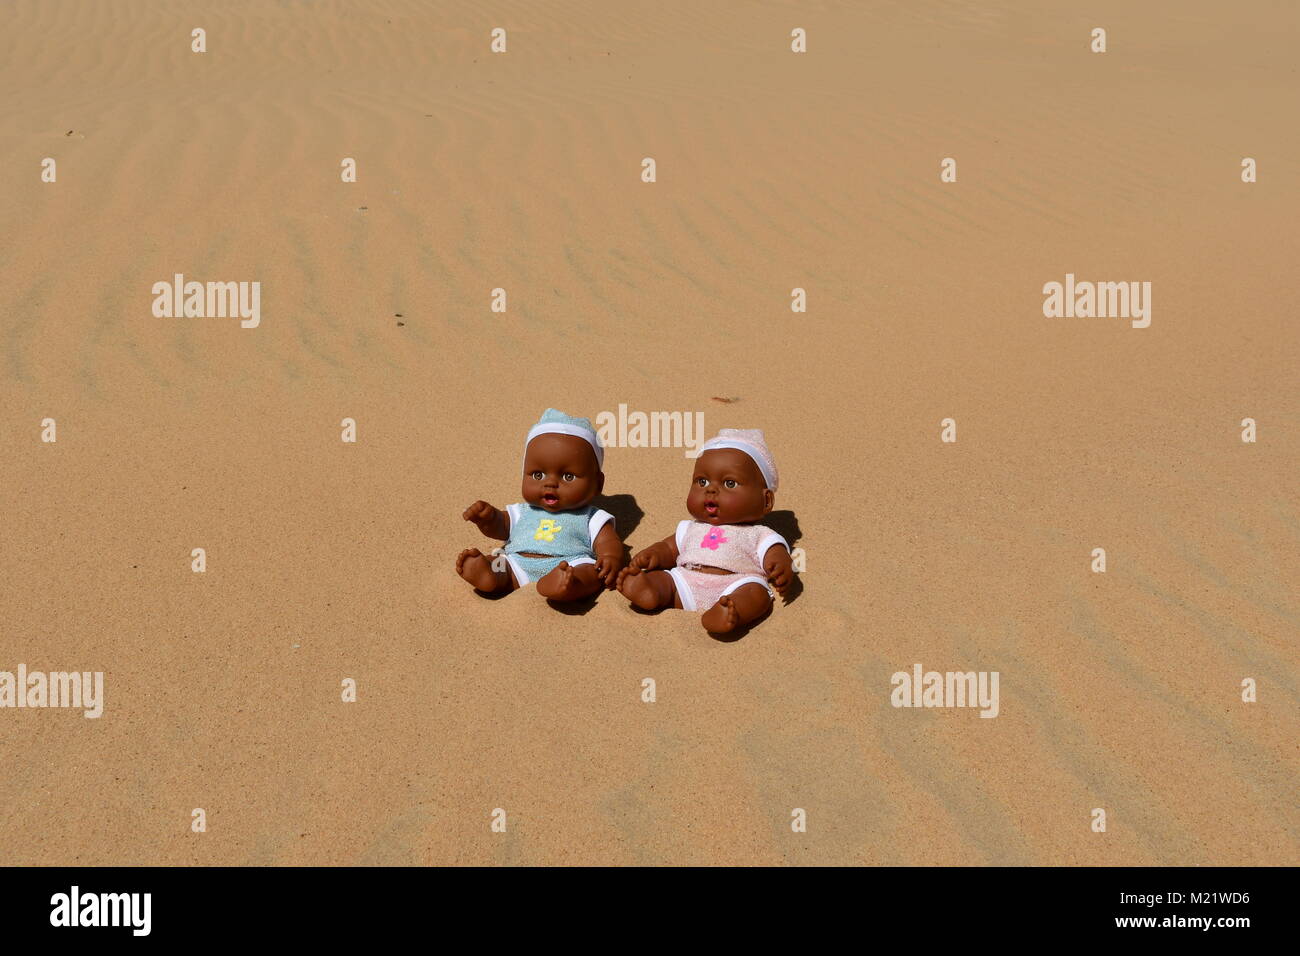 Ragazzo bambole nella sabbia, pelle scura bambole Foto Stock